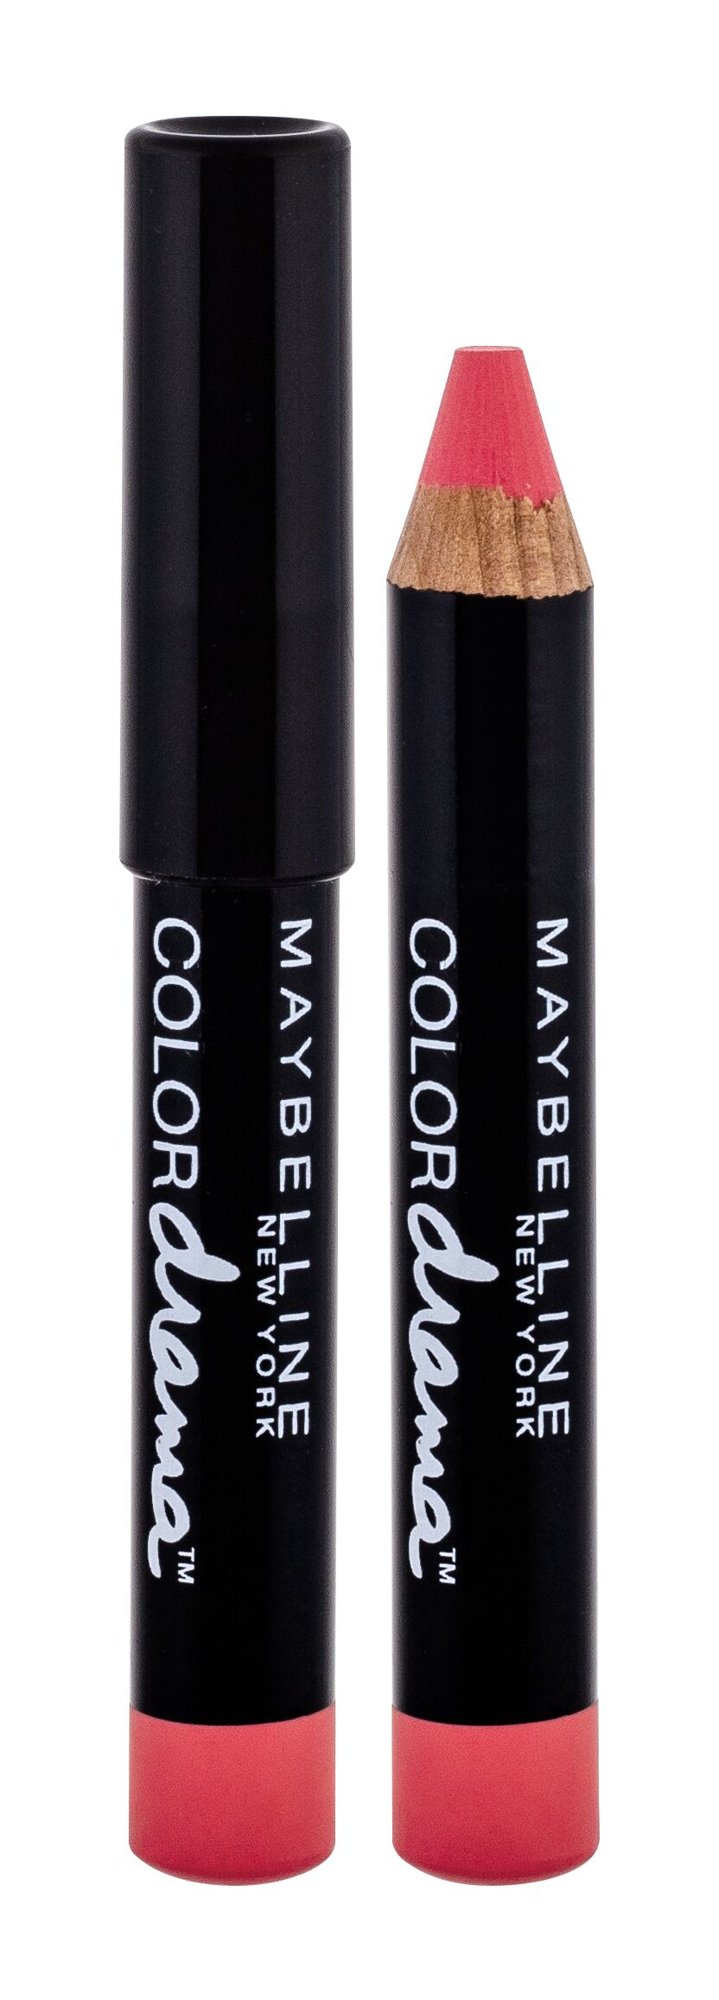 Maybelline Color Drama lūpų pieštukas